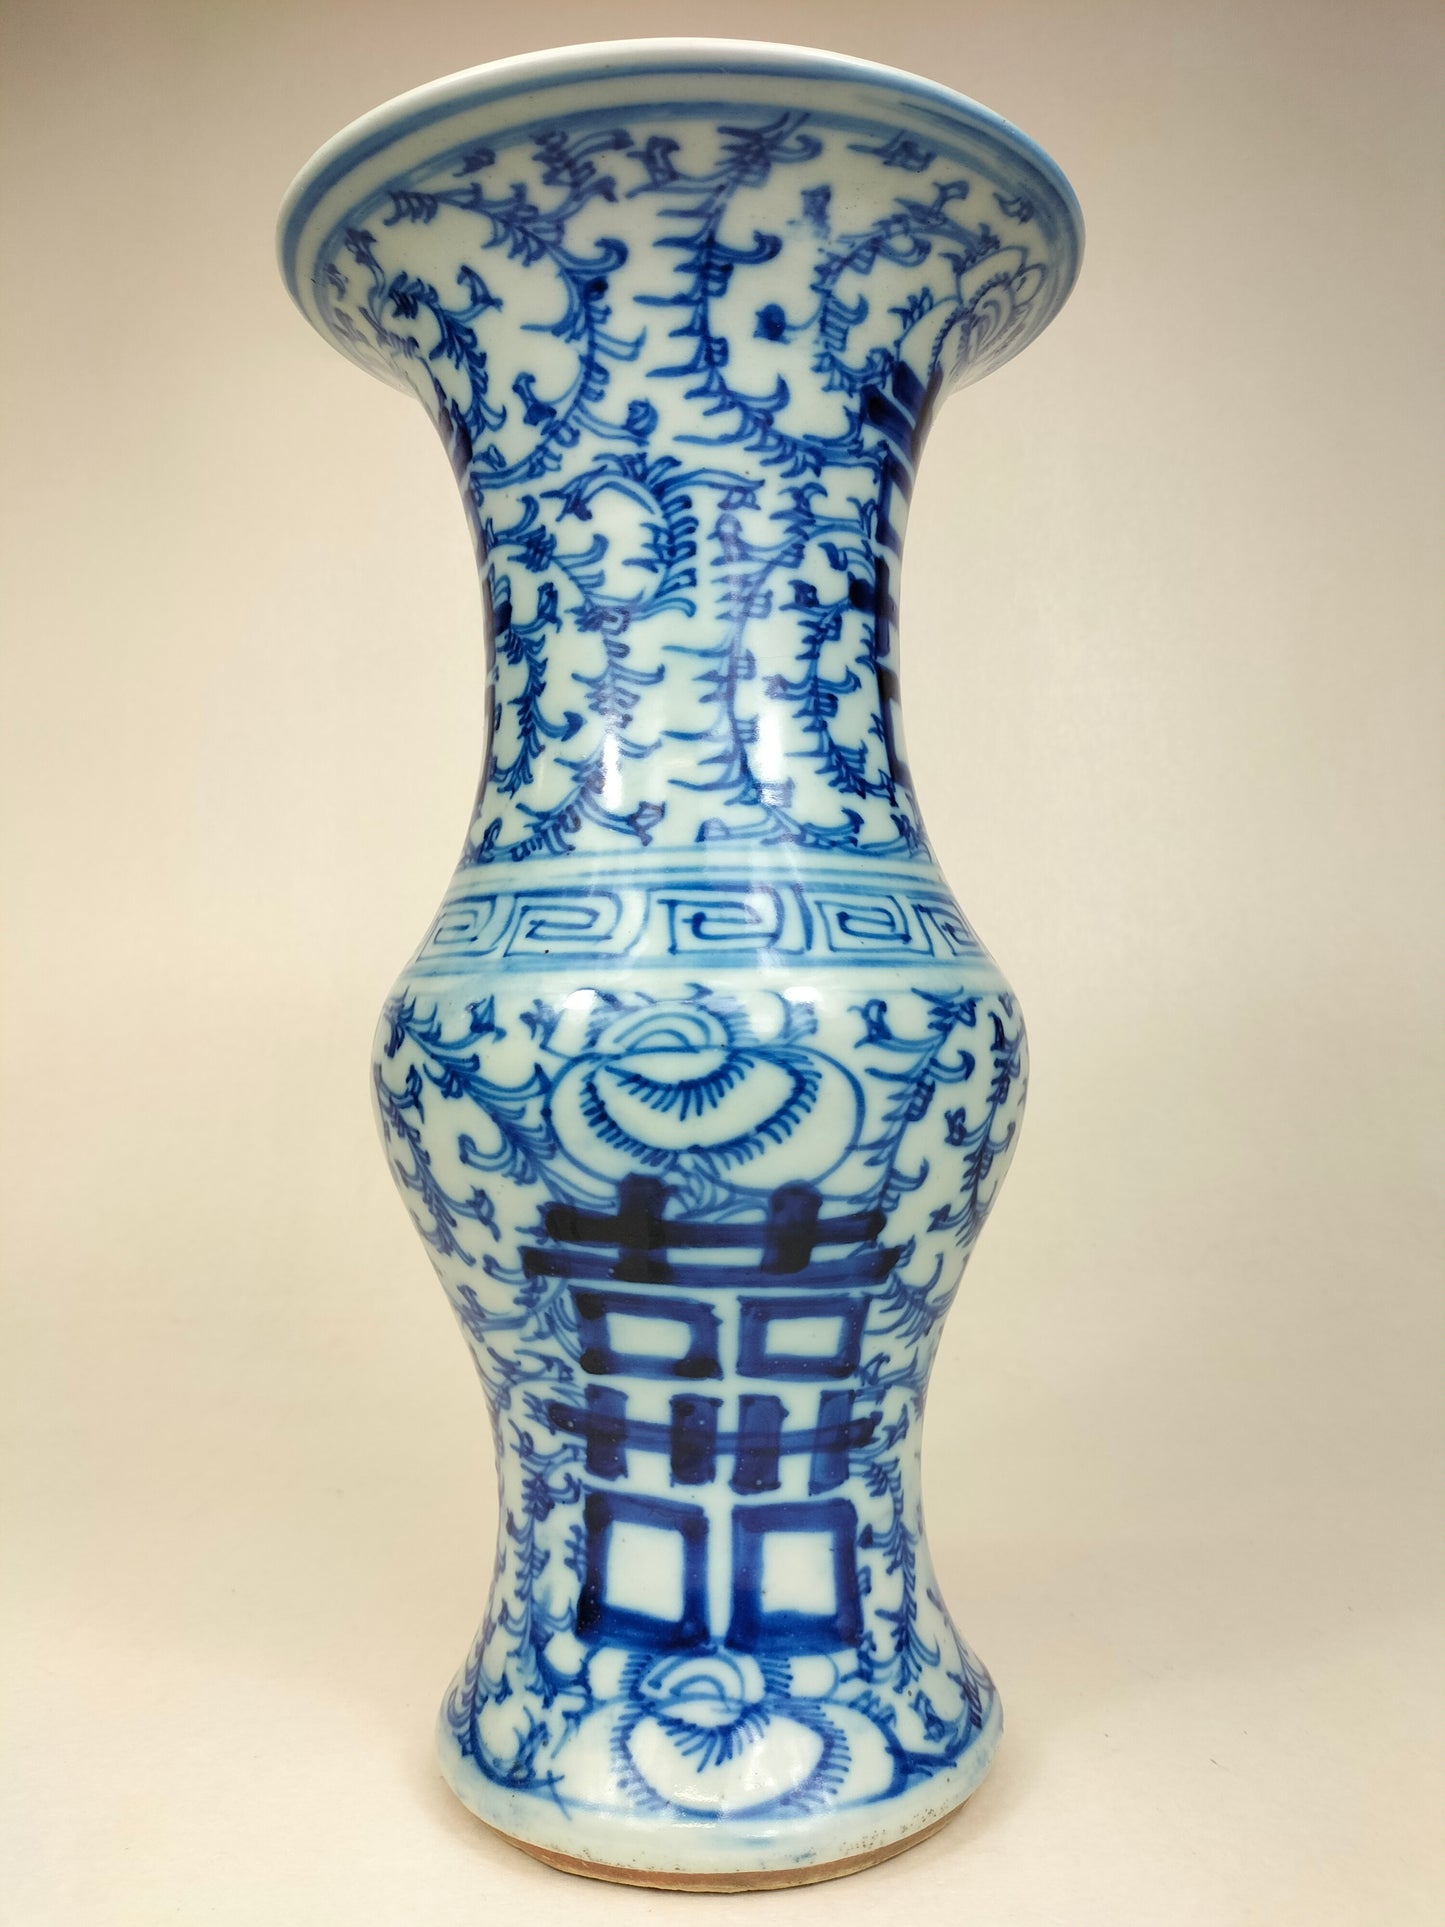 Ancien vase chinois double bonheur yen yen // Dynastie Qing - 19e siècle